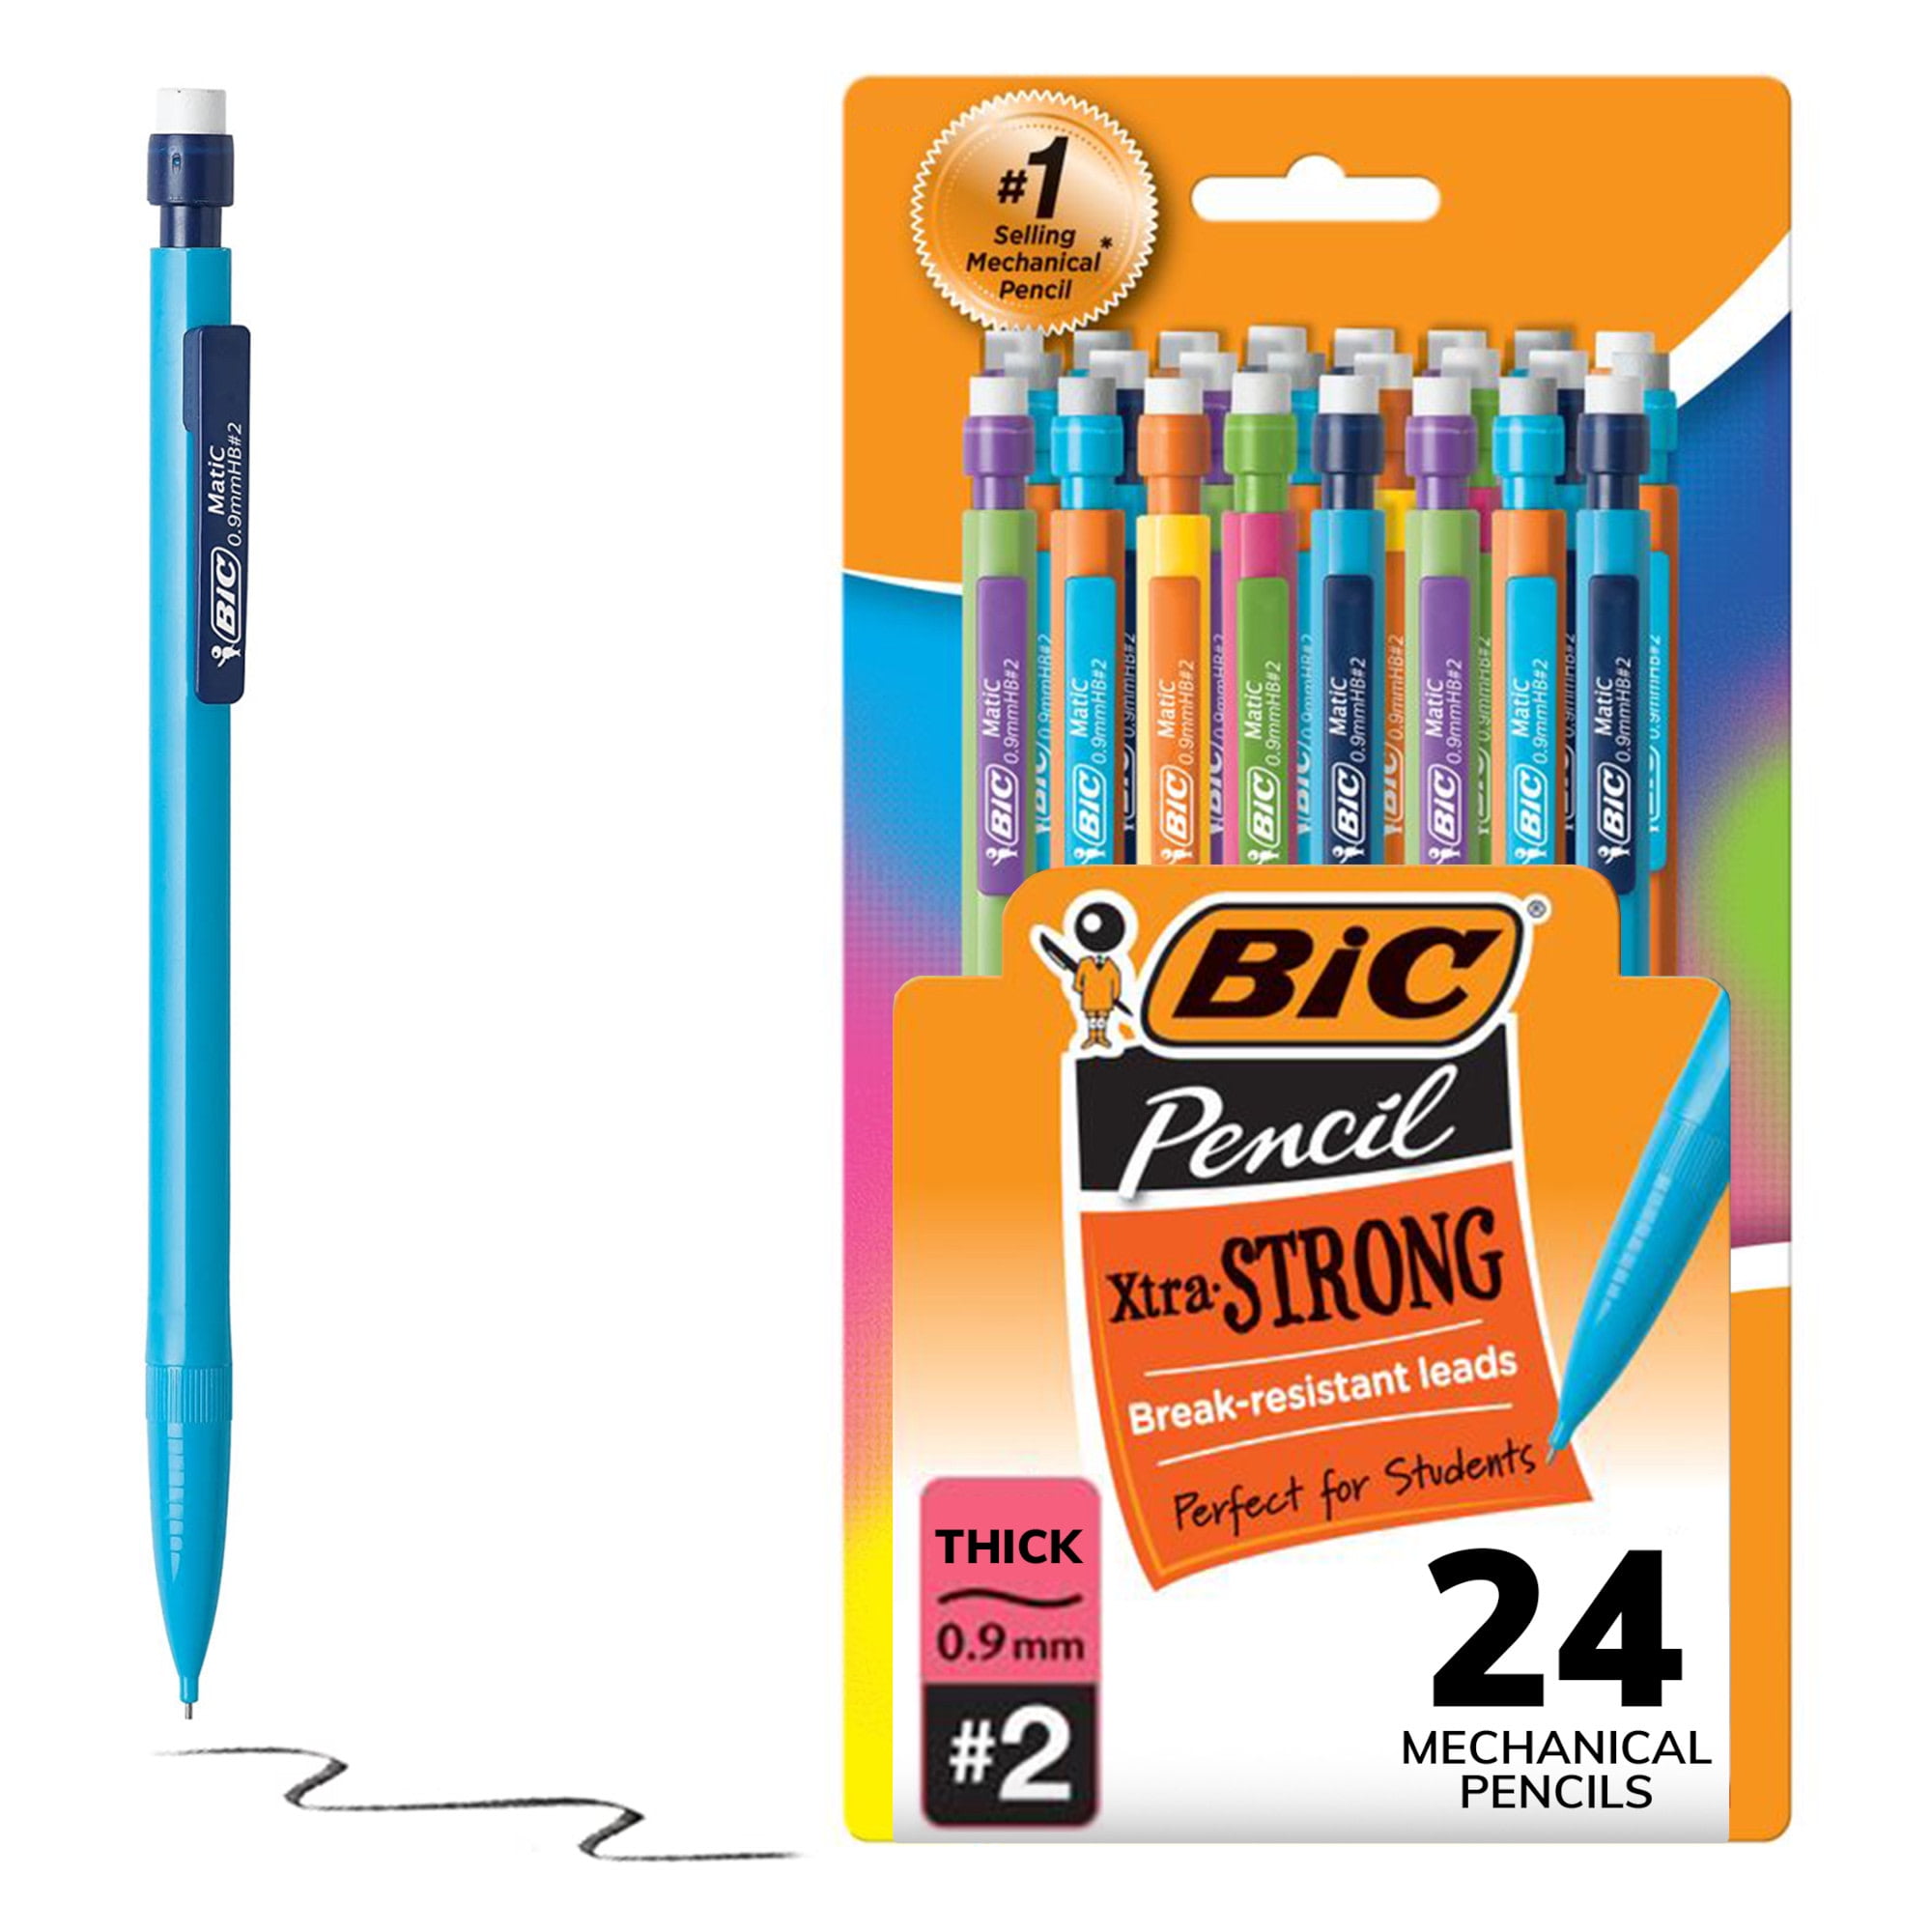 Best Deal for FourCandies 6PCS Colored Mechanical Pencils Set + 12 Colors